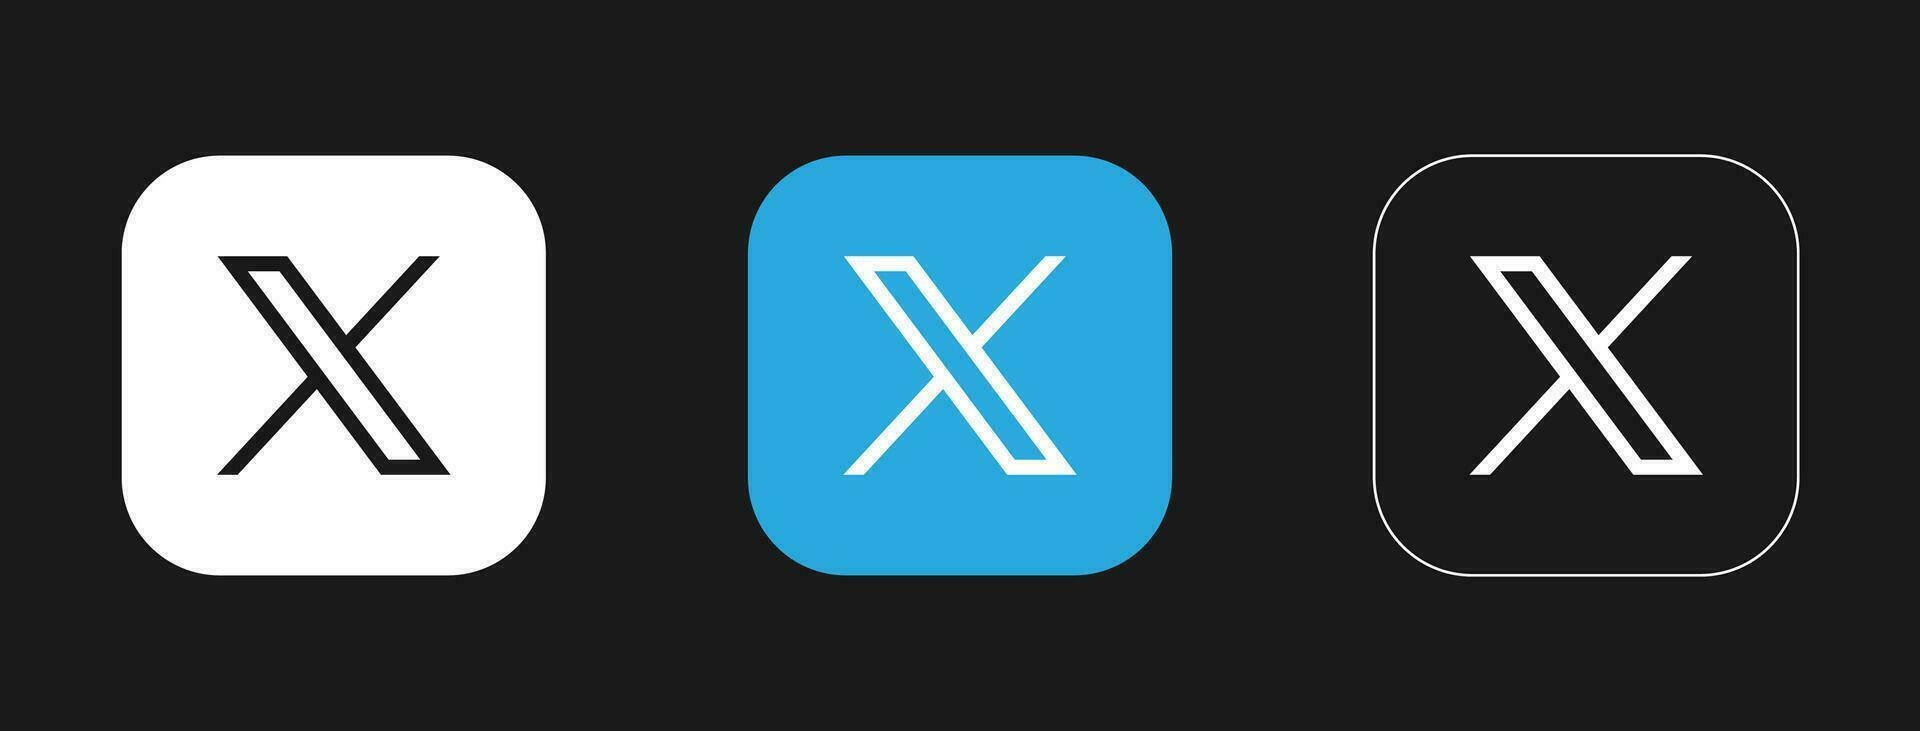 Twitter New x logo design. Twitter x Rebranding vector